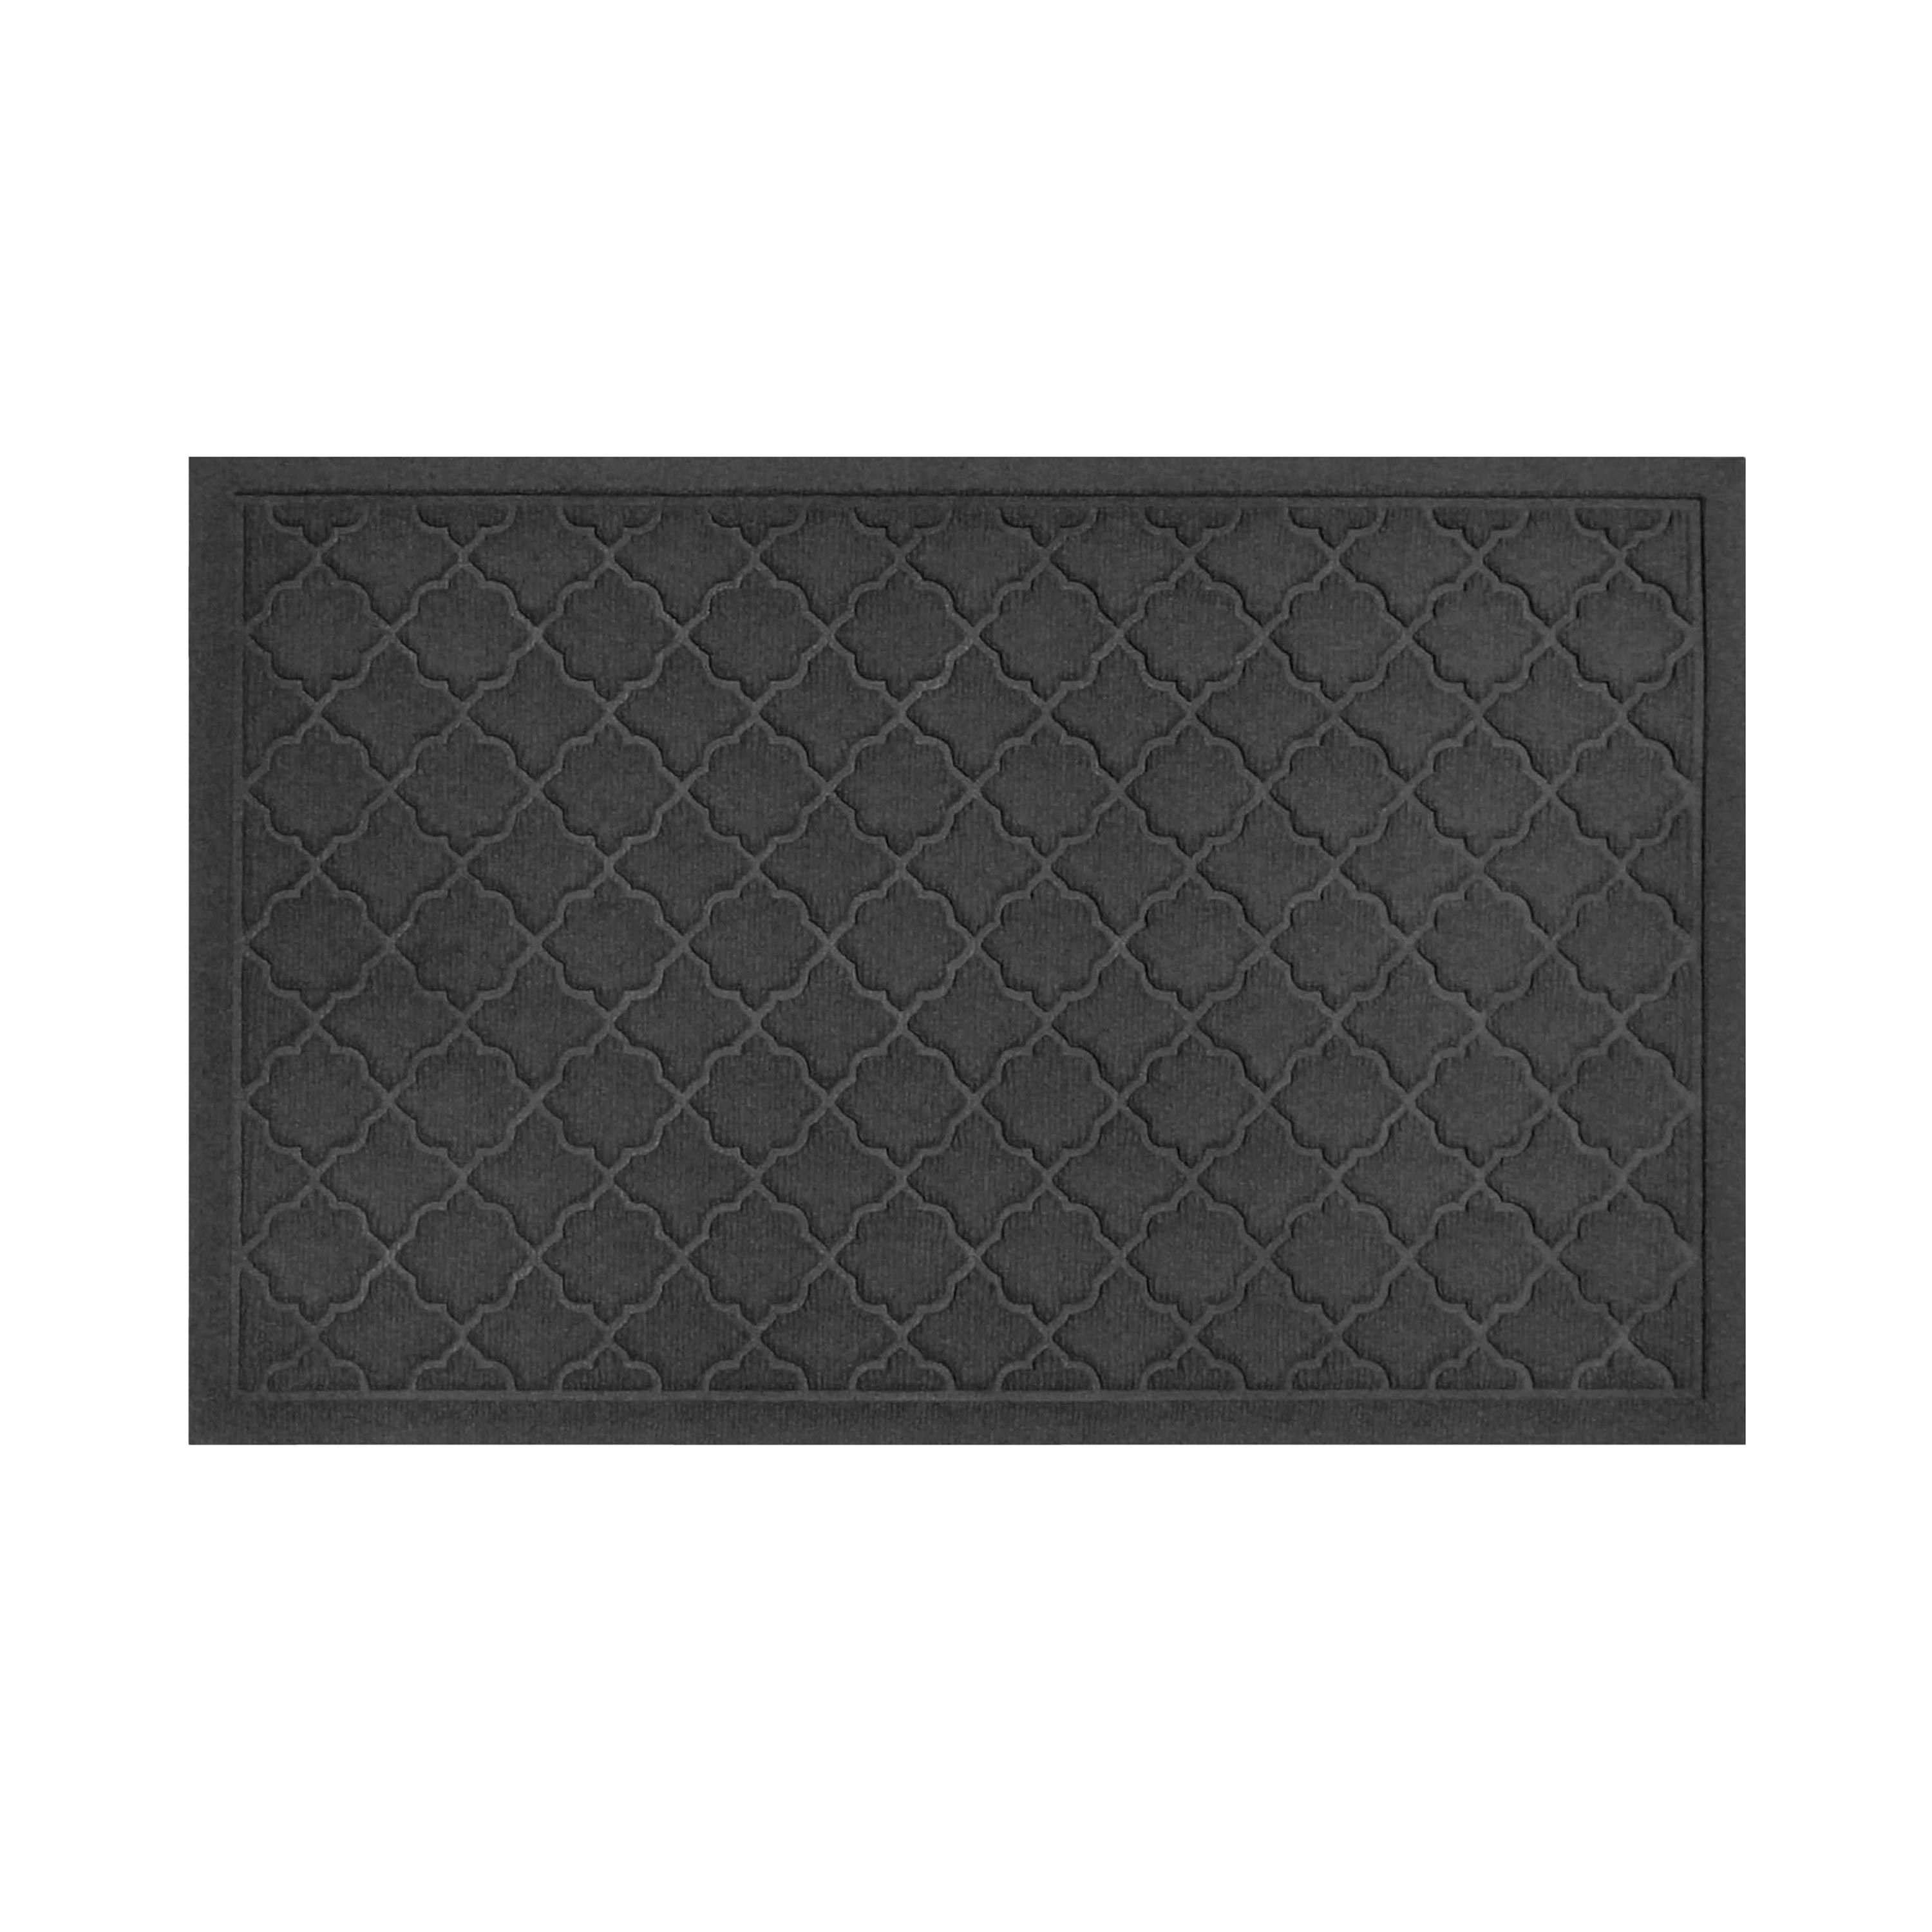 Waterhog Indoor/Outdoor Geometric Doormat, 2' x 3' - Charcoal